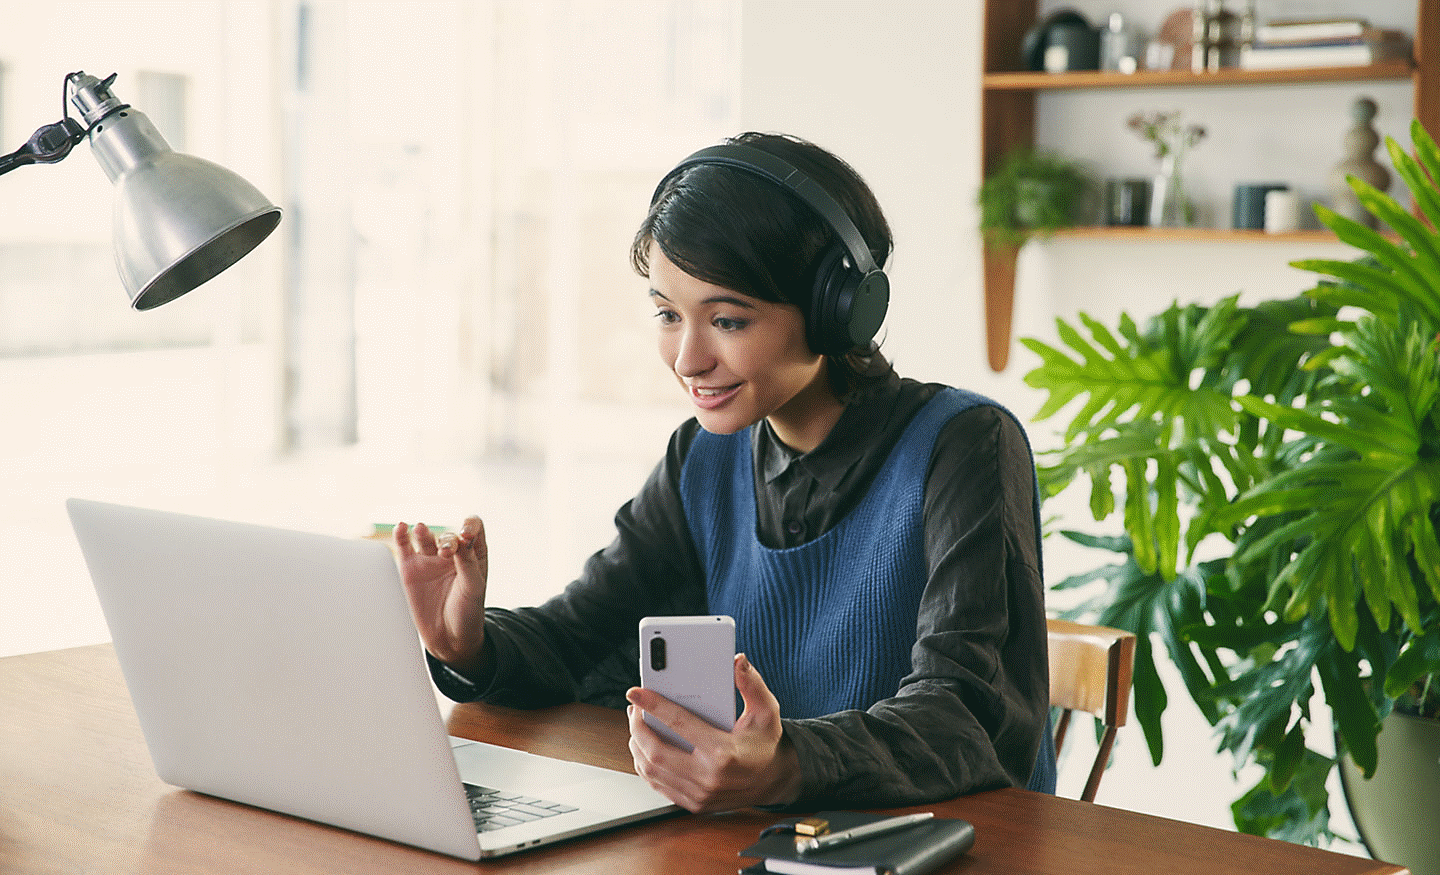 Slika ženske, ki za mizo nosi črne slušalke Sony WH-CH720 ter uporablja prenosni računalnik in mobilni telefon